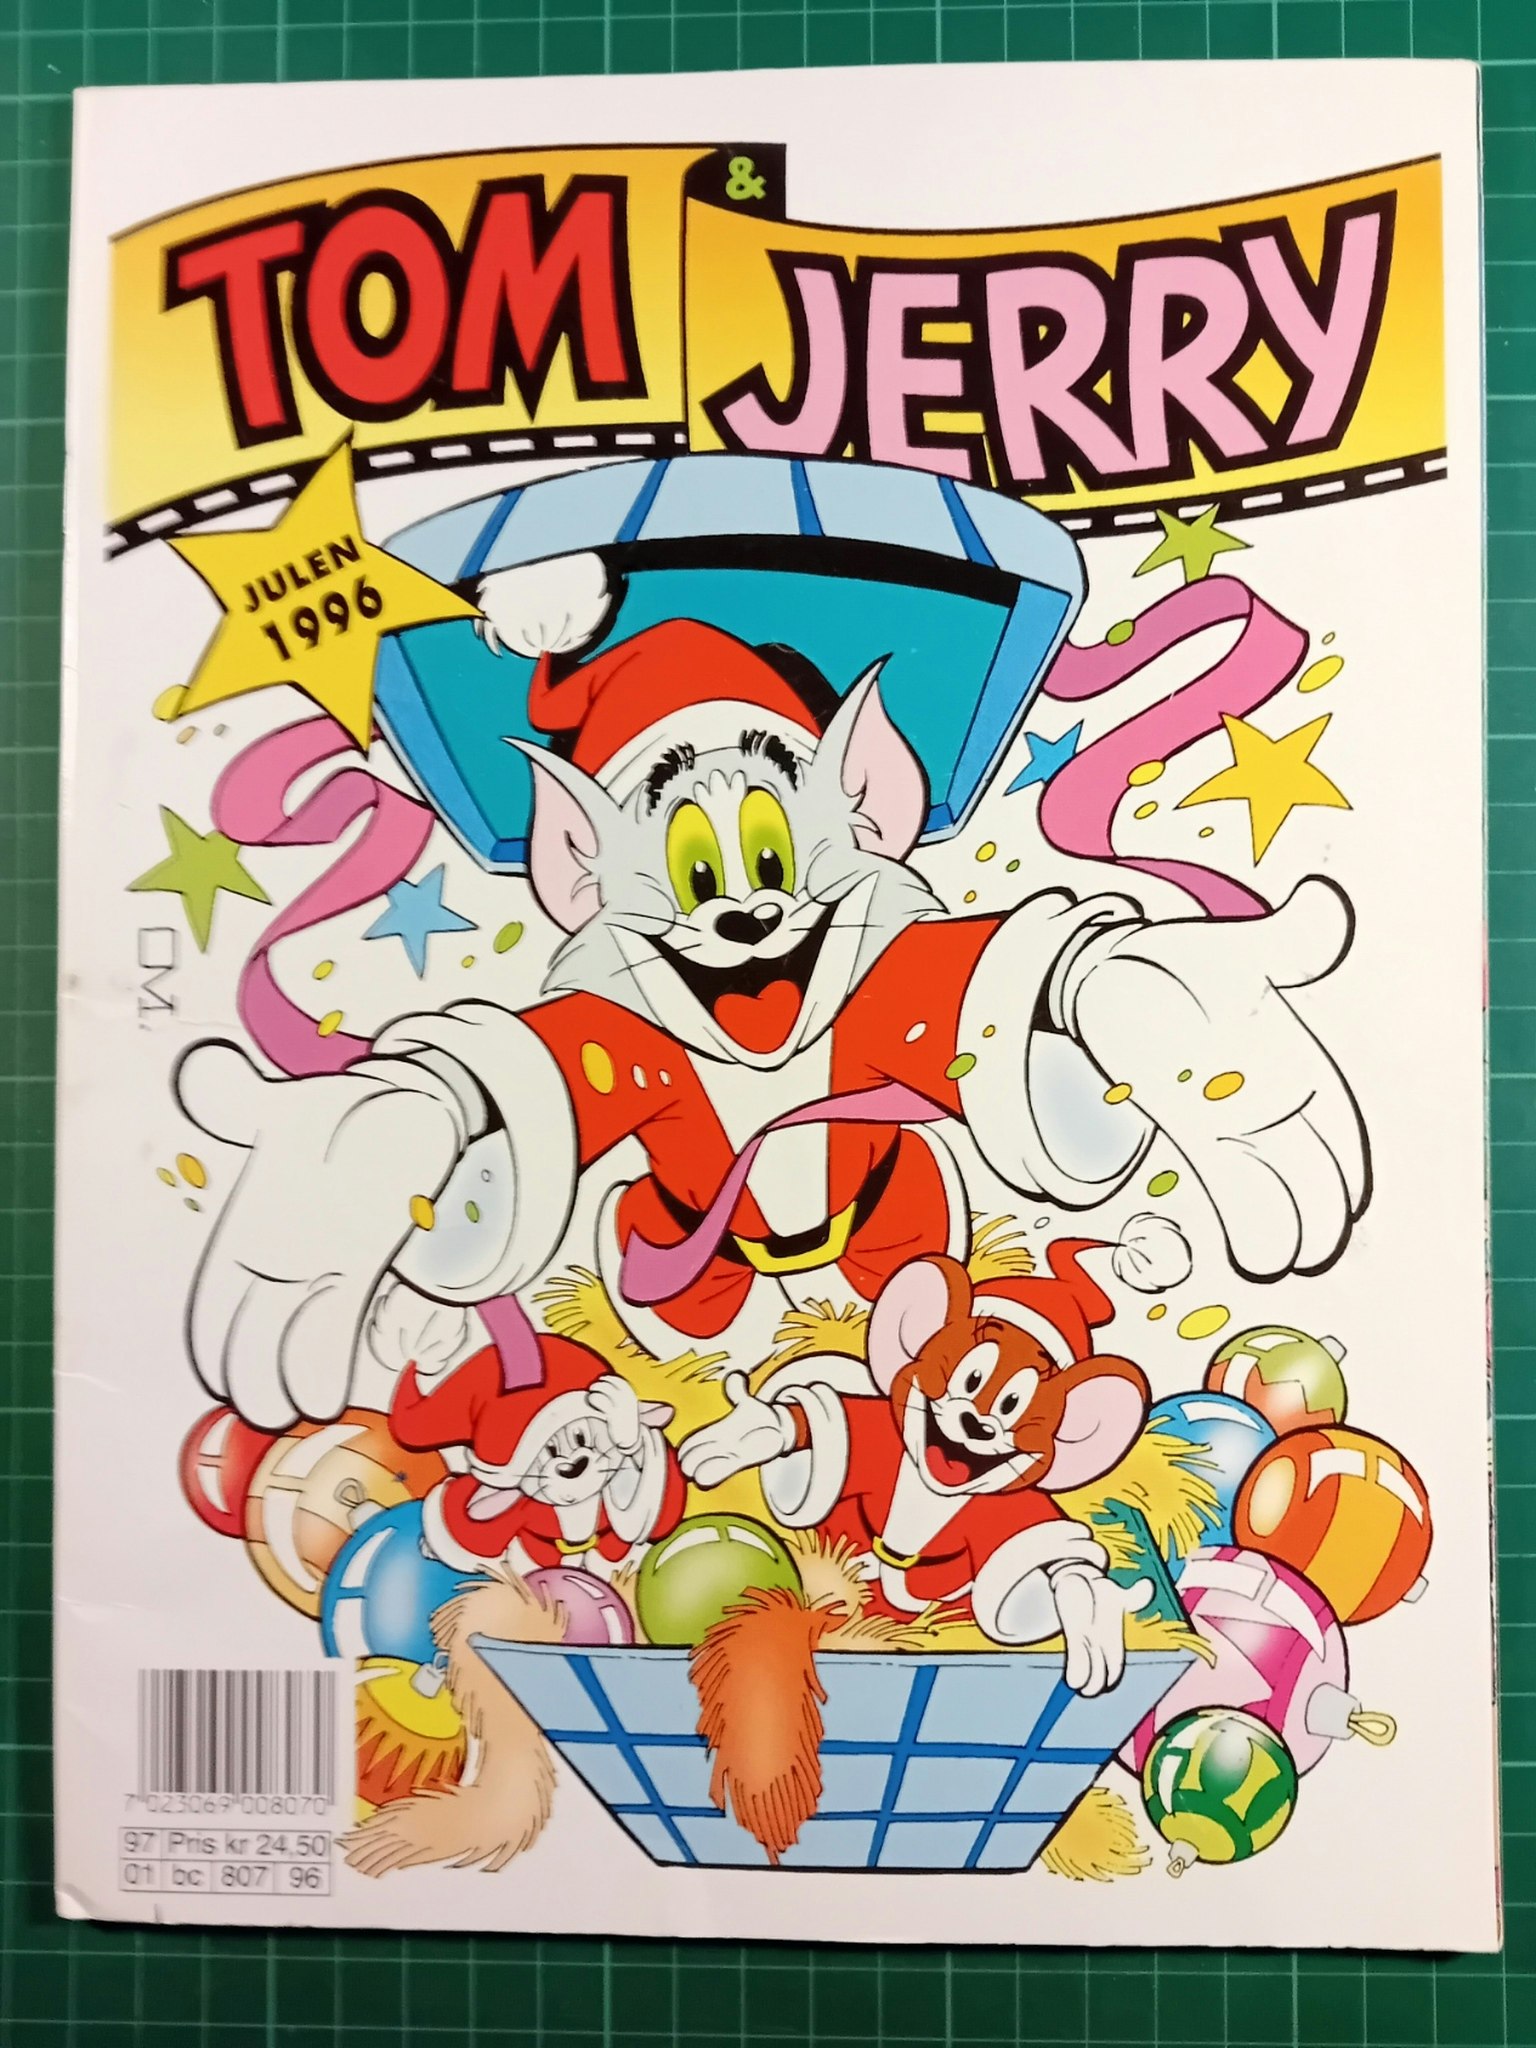 Tom & Jerry julen 1996